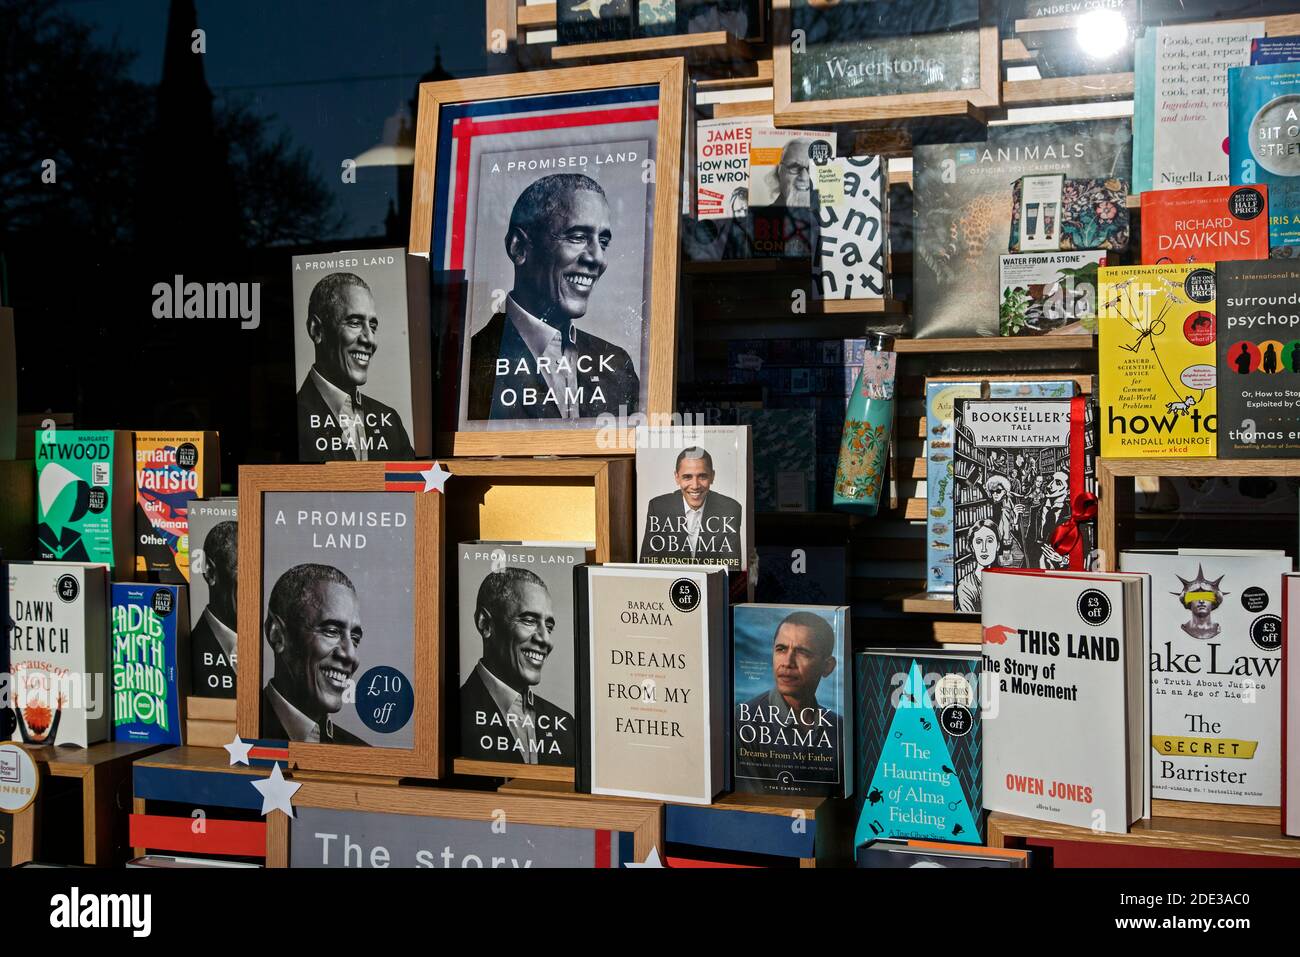 Copie delle memorie di Barack Obama 'UNA Terra promessa' prominenti nella finestra della libreria Waterstones a Edimburgo, Scozia, Regno Unito. Foto Stock